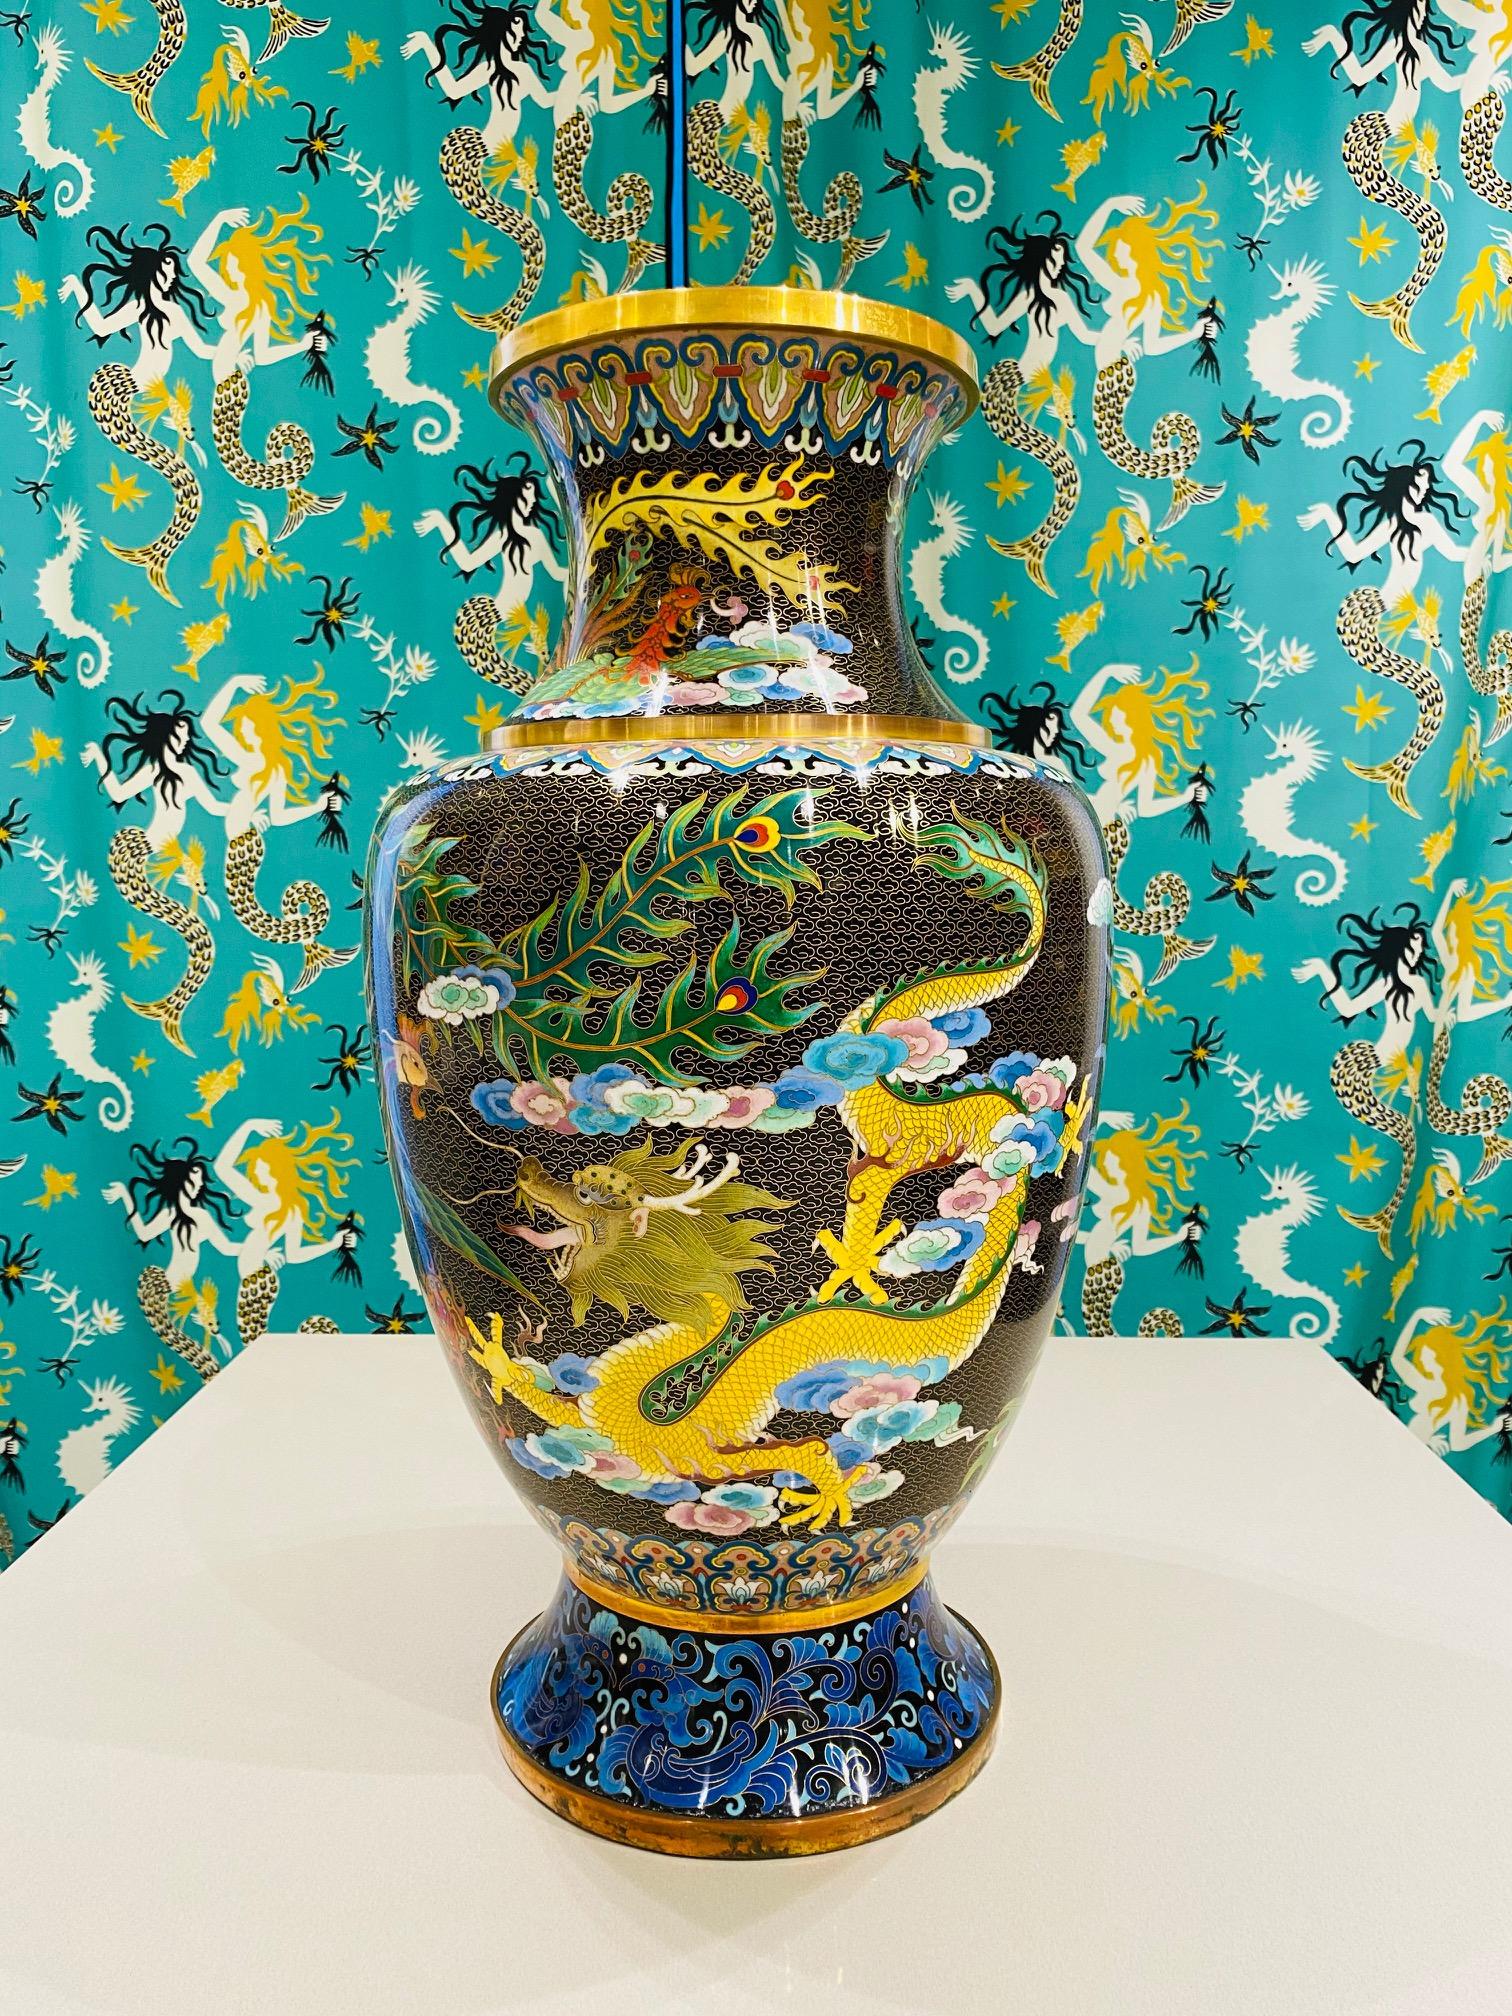 Große chinesische Cloisonné-Vase aus den 1940er Jahren. Cloisonné ist eine uralte Technik, bei der dekorative Materialien wie Emaille, farbiges Glas oder Edelsteine in Metallobjekte eingearbeitet werden, die mit Draht auf einer Metallunterlage